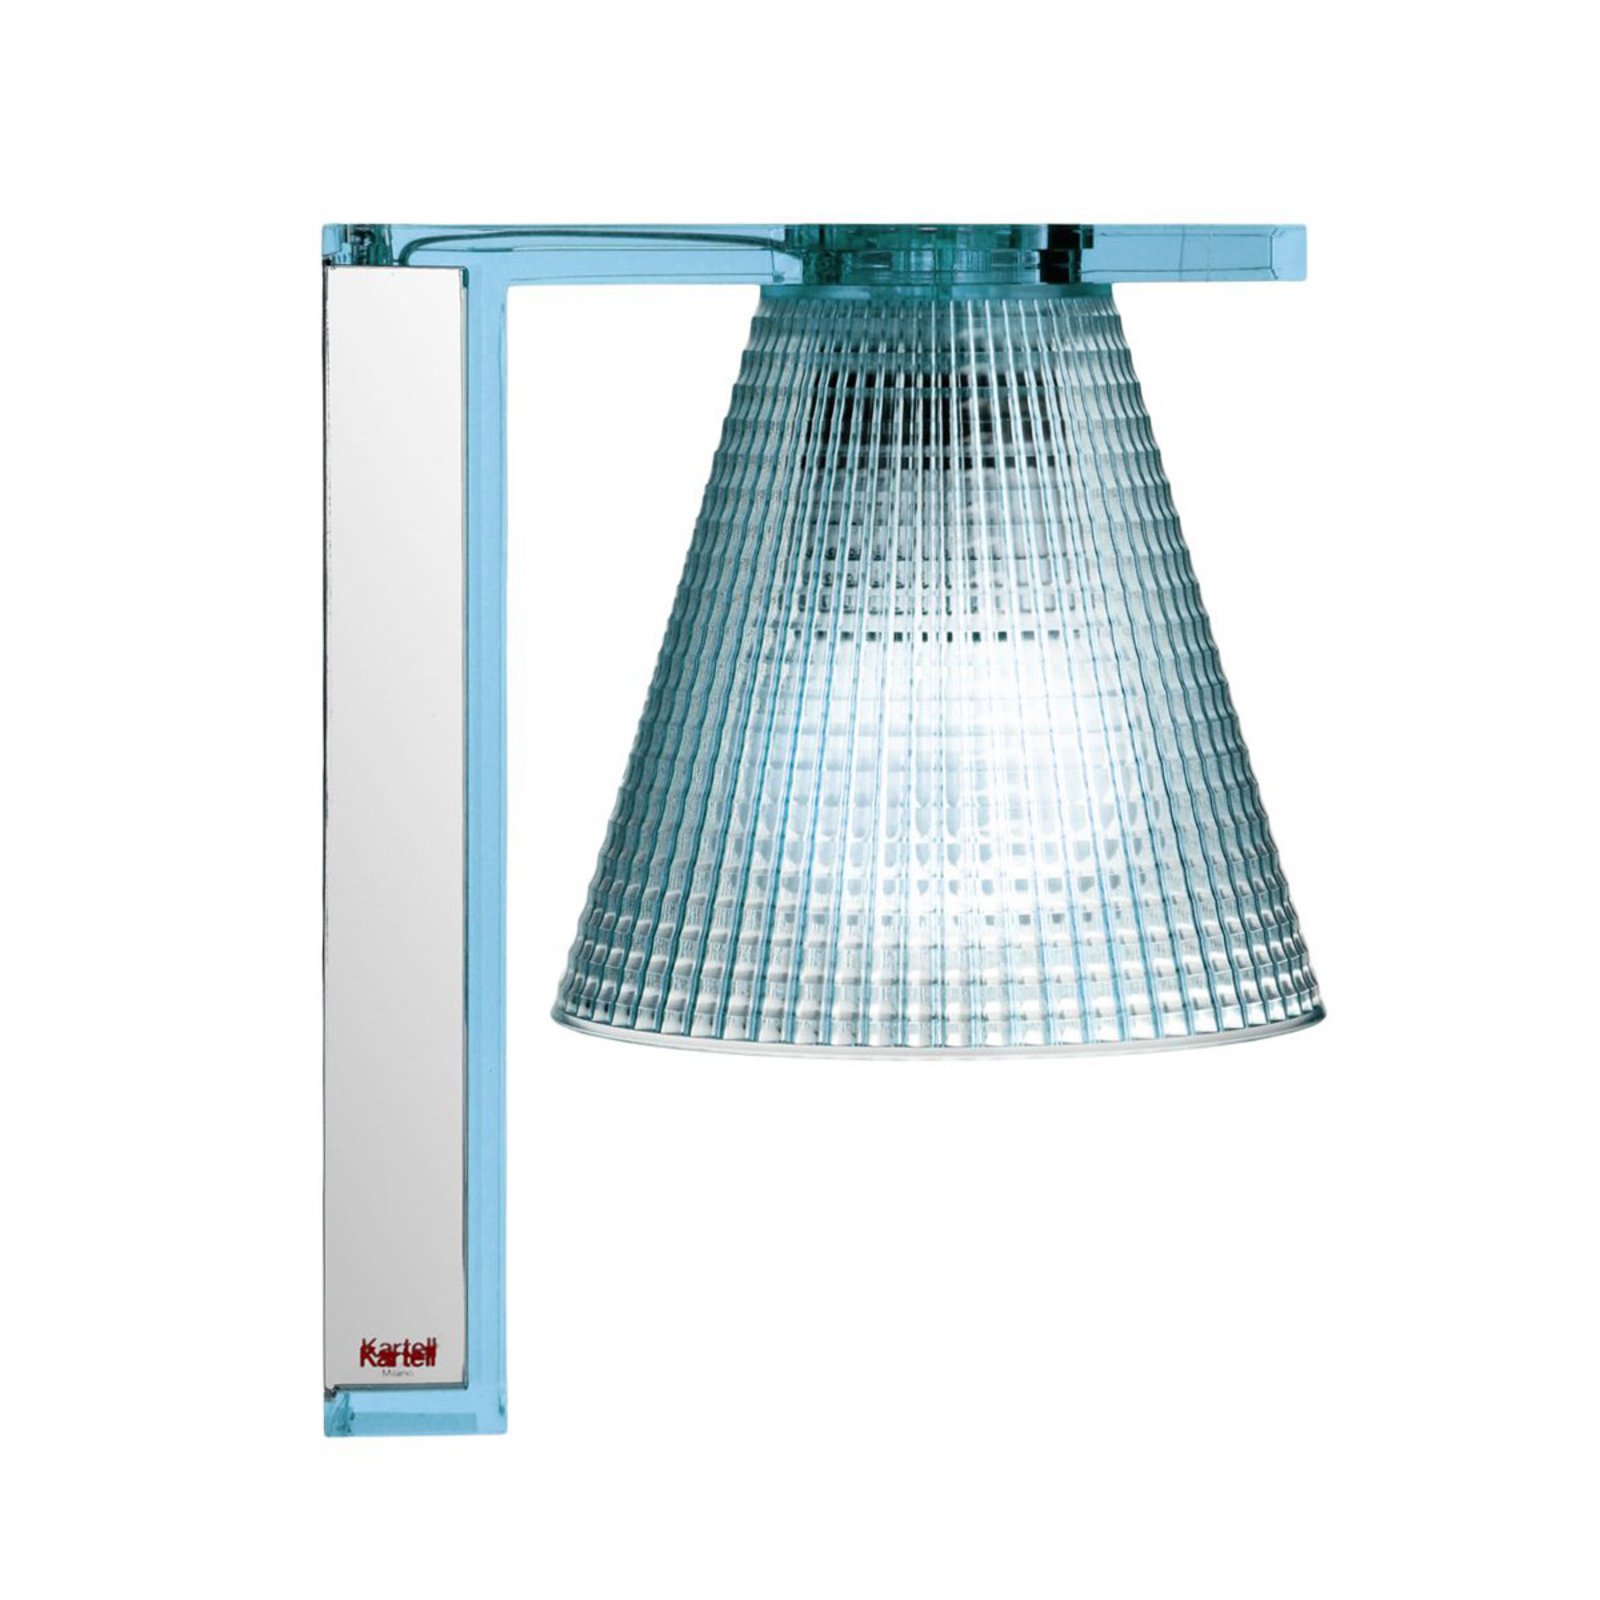 Kartell Light-Air LED wall light, blue